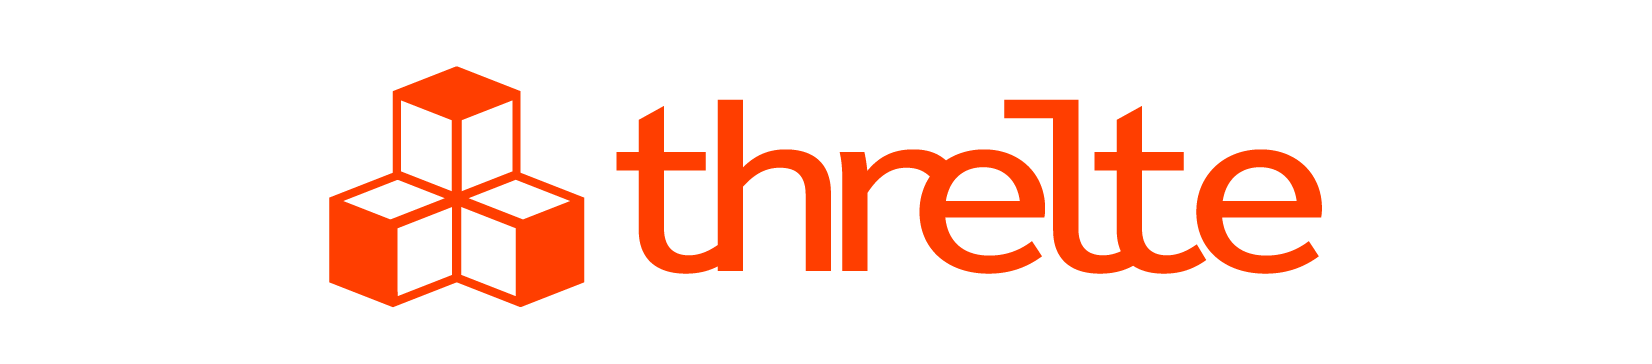 Threlte Logo